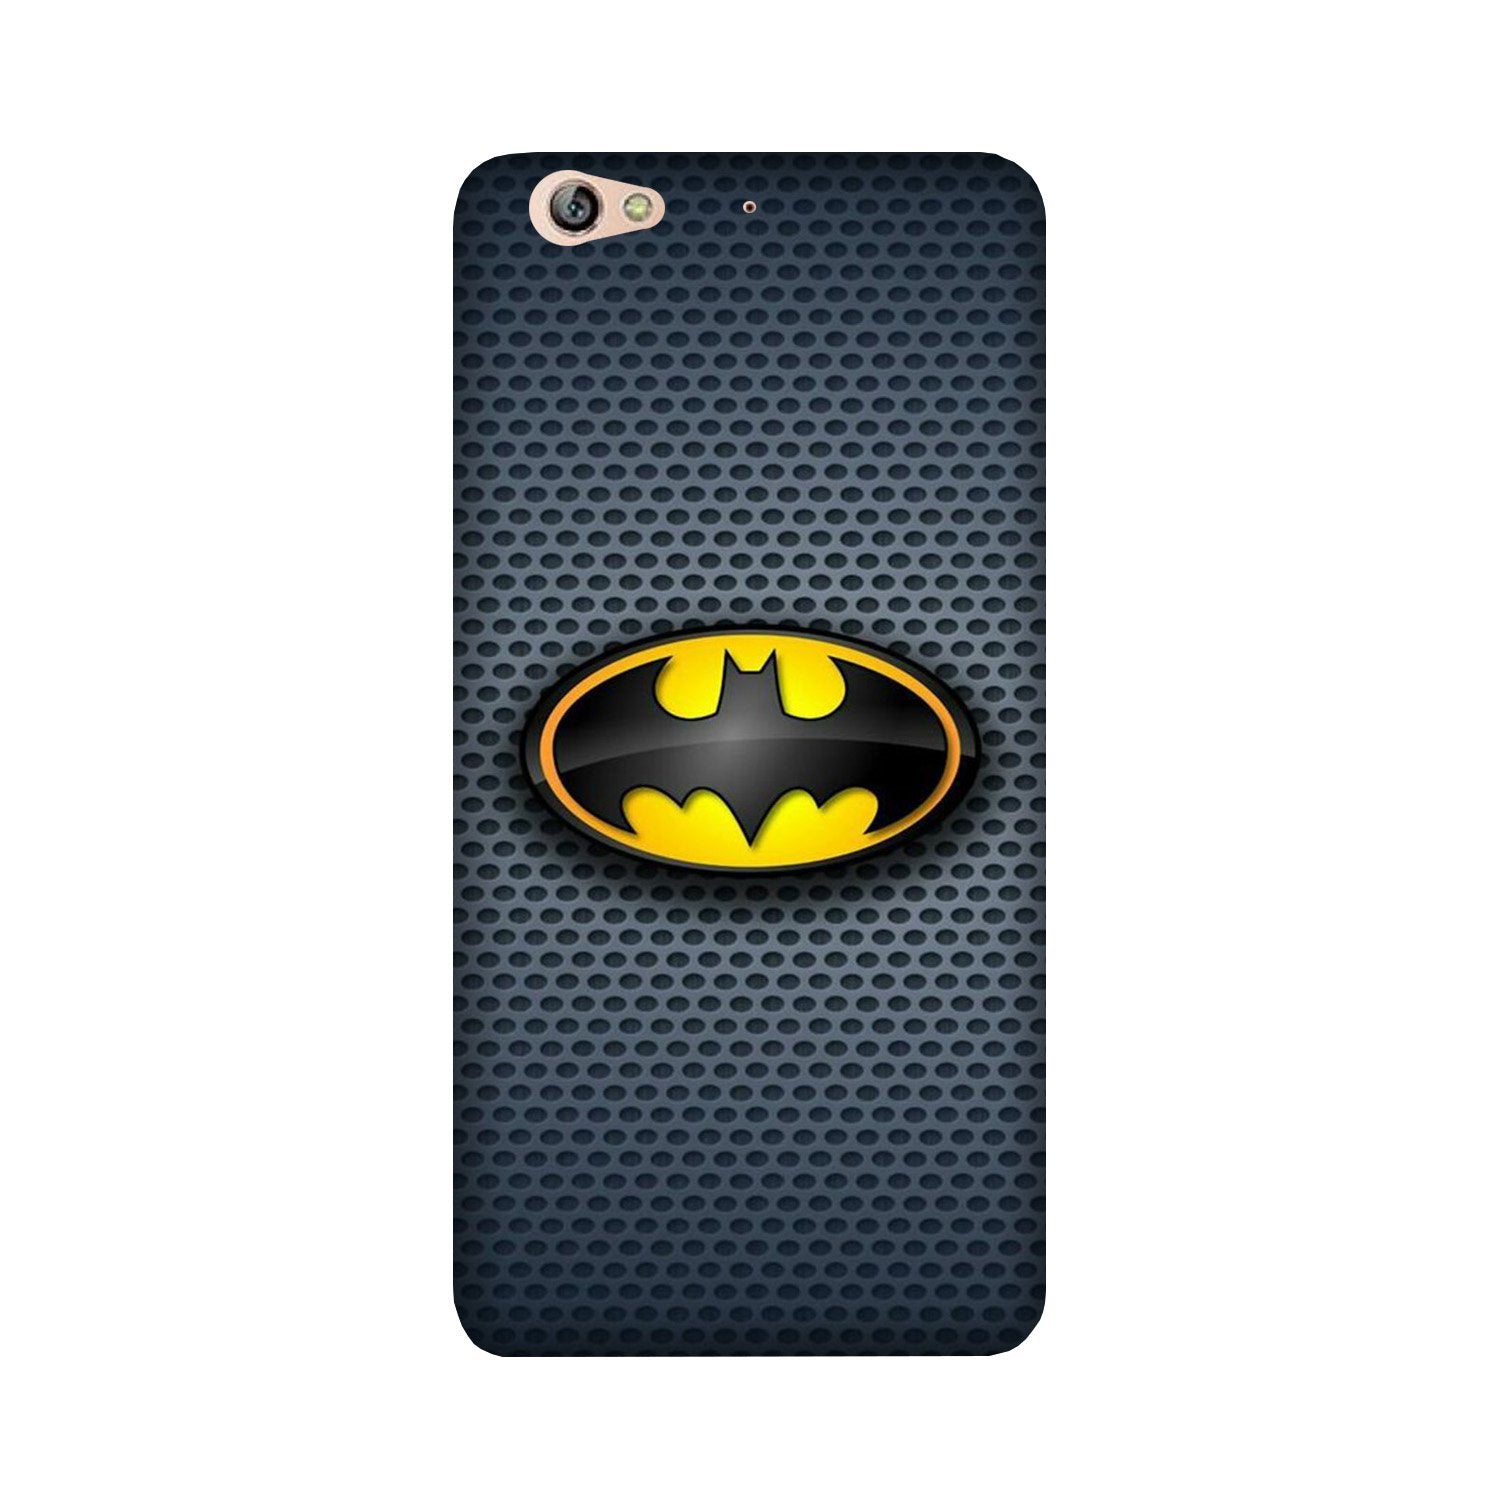 Batman Case for Gionee S6 (Design No. 244)